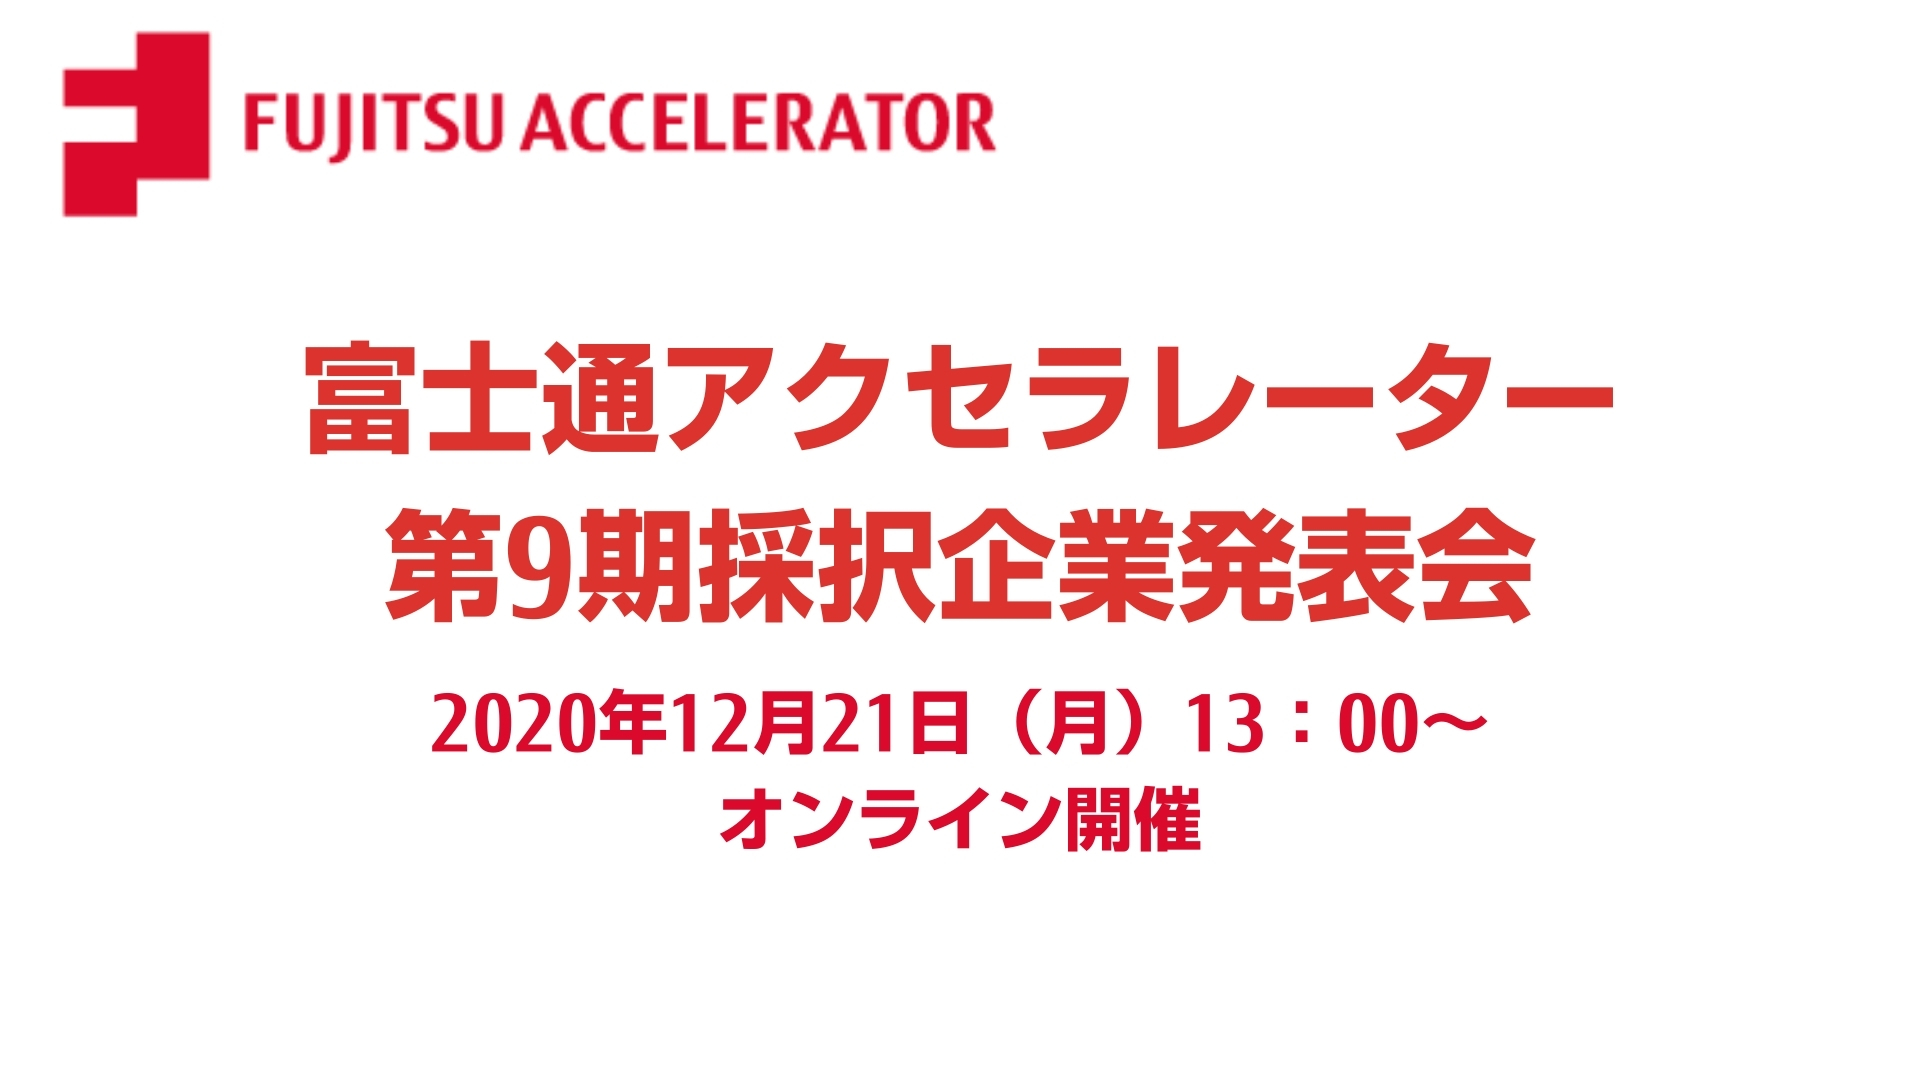 富士通アクセラレーター第9期採択企業発表会 参加申し込み開始 Fujitsu Acceleratorのプレスリリース